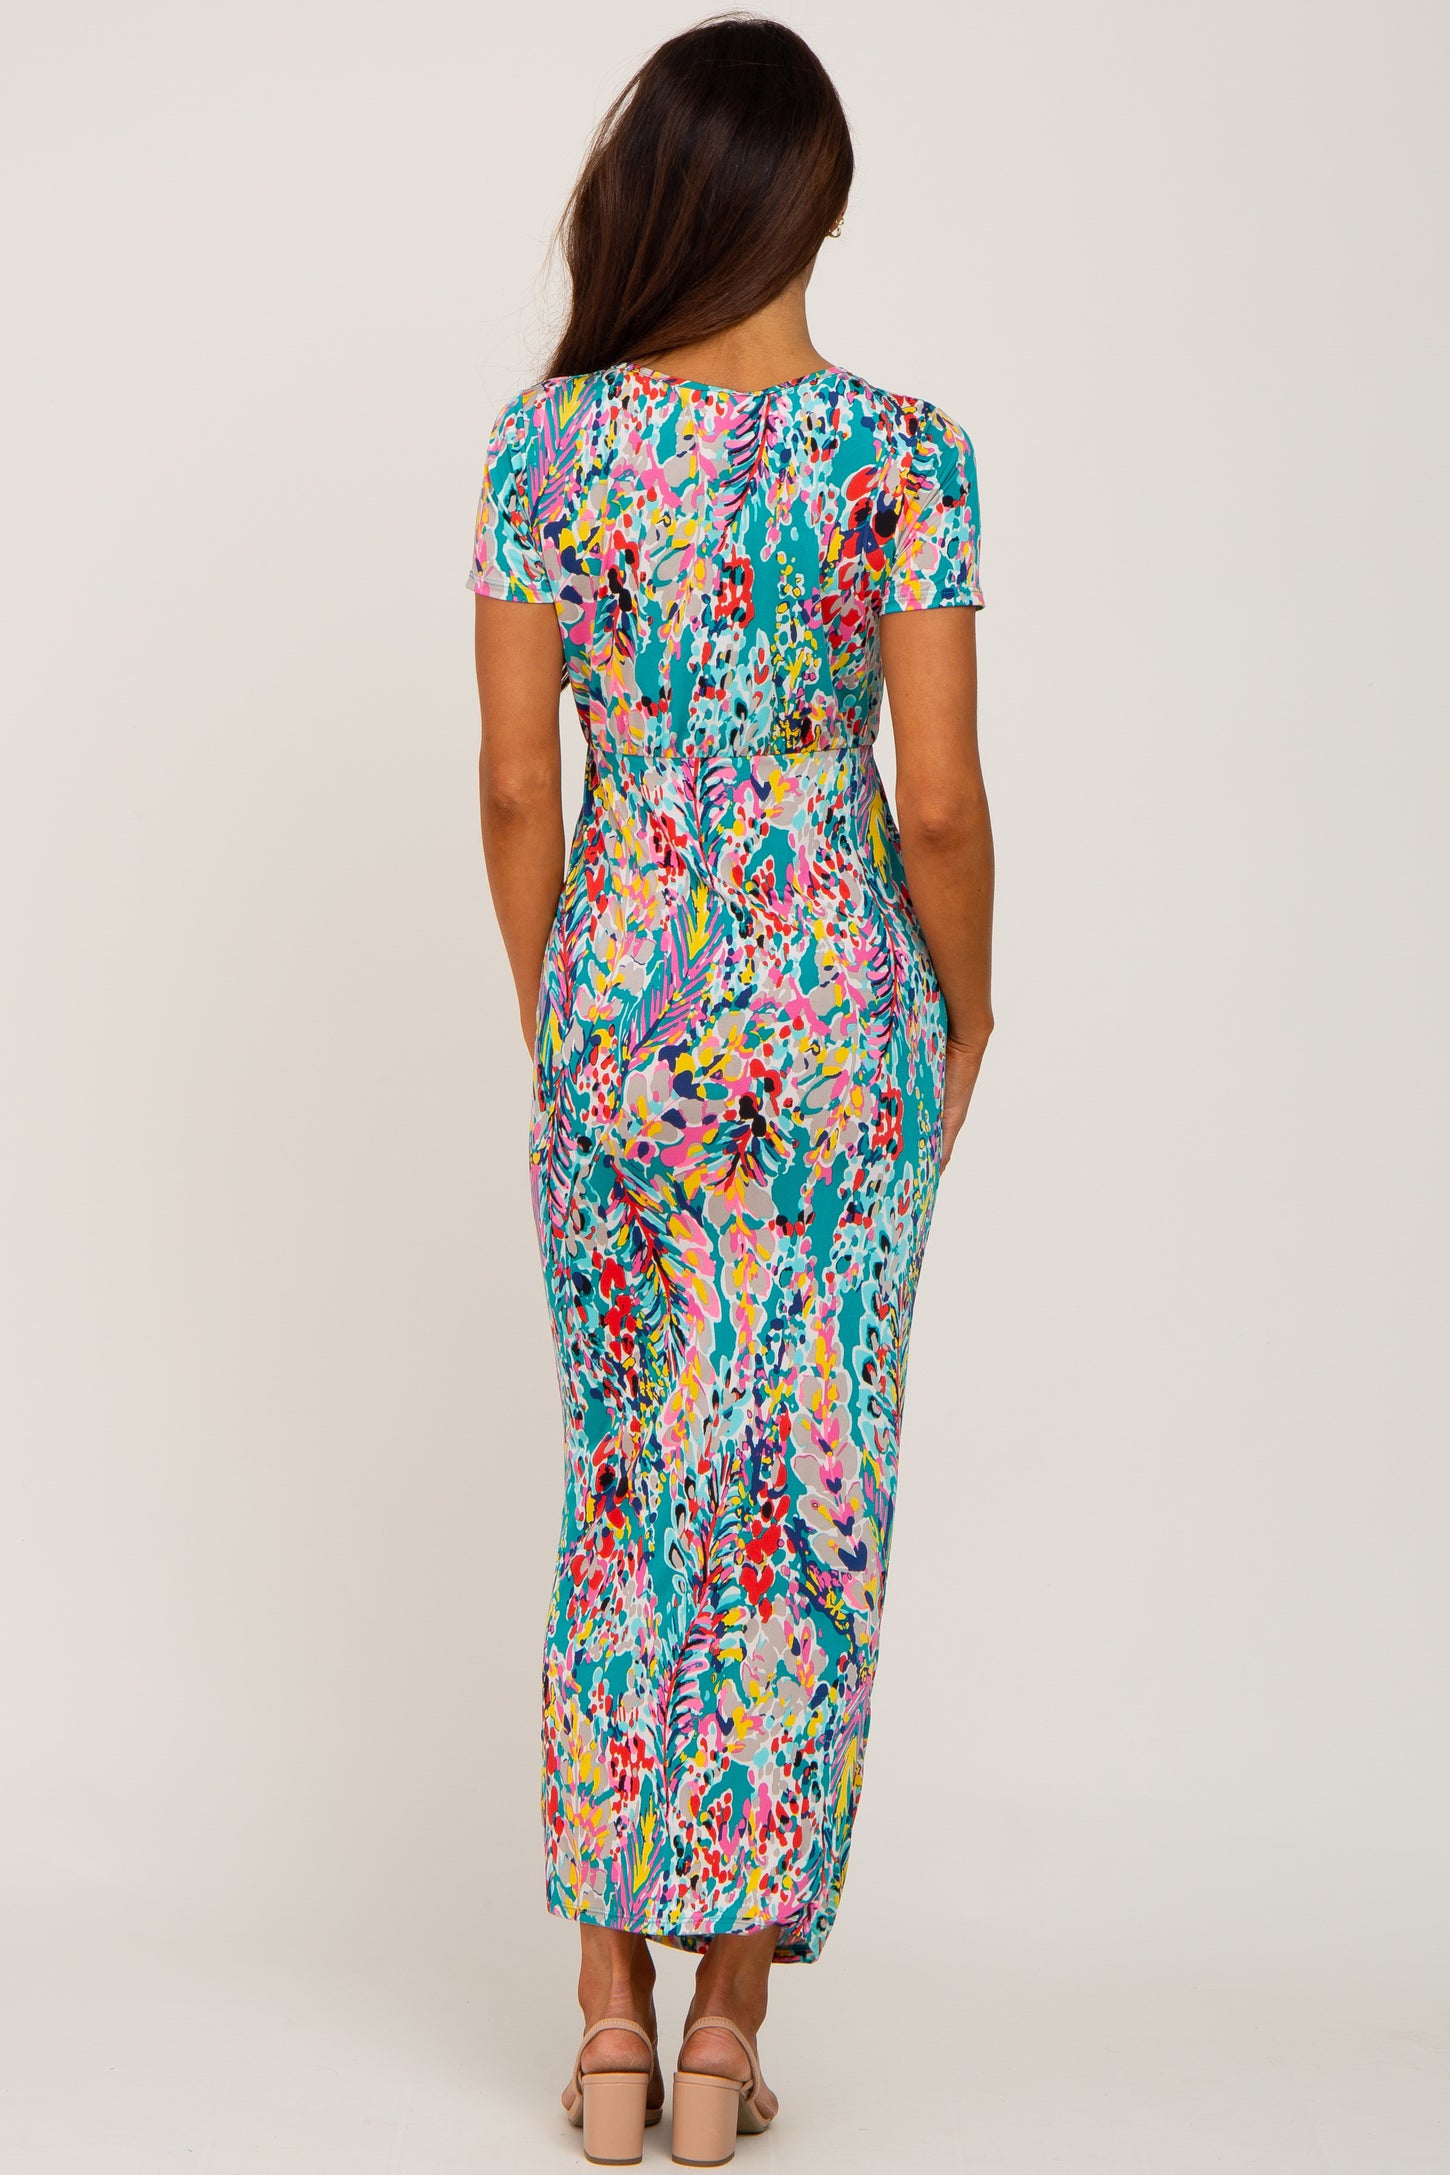 Jade Multi-Color Floral Side Slit Maxi Dress